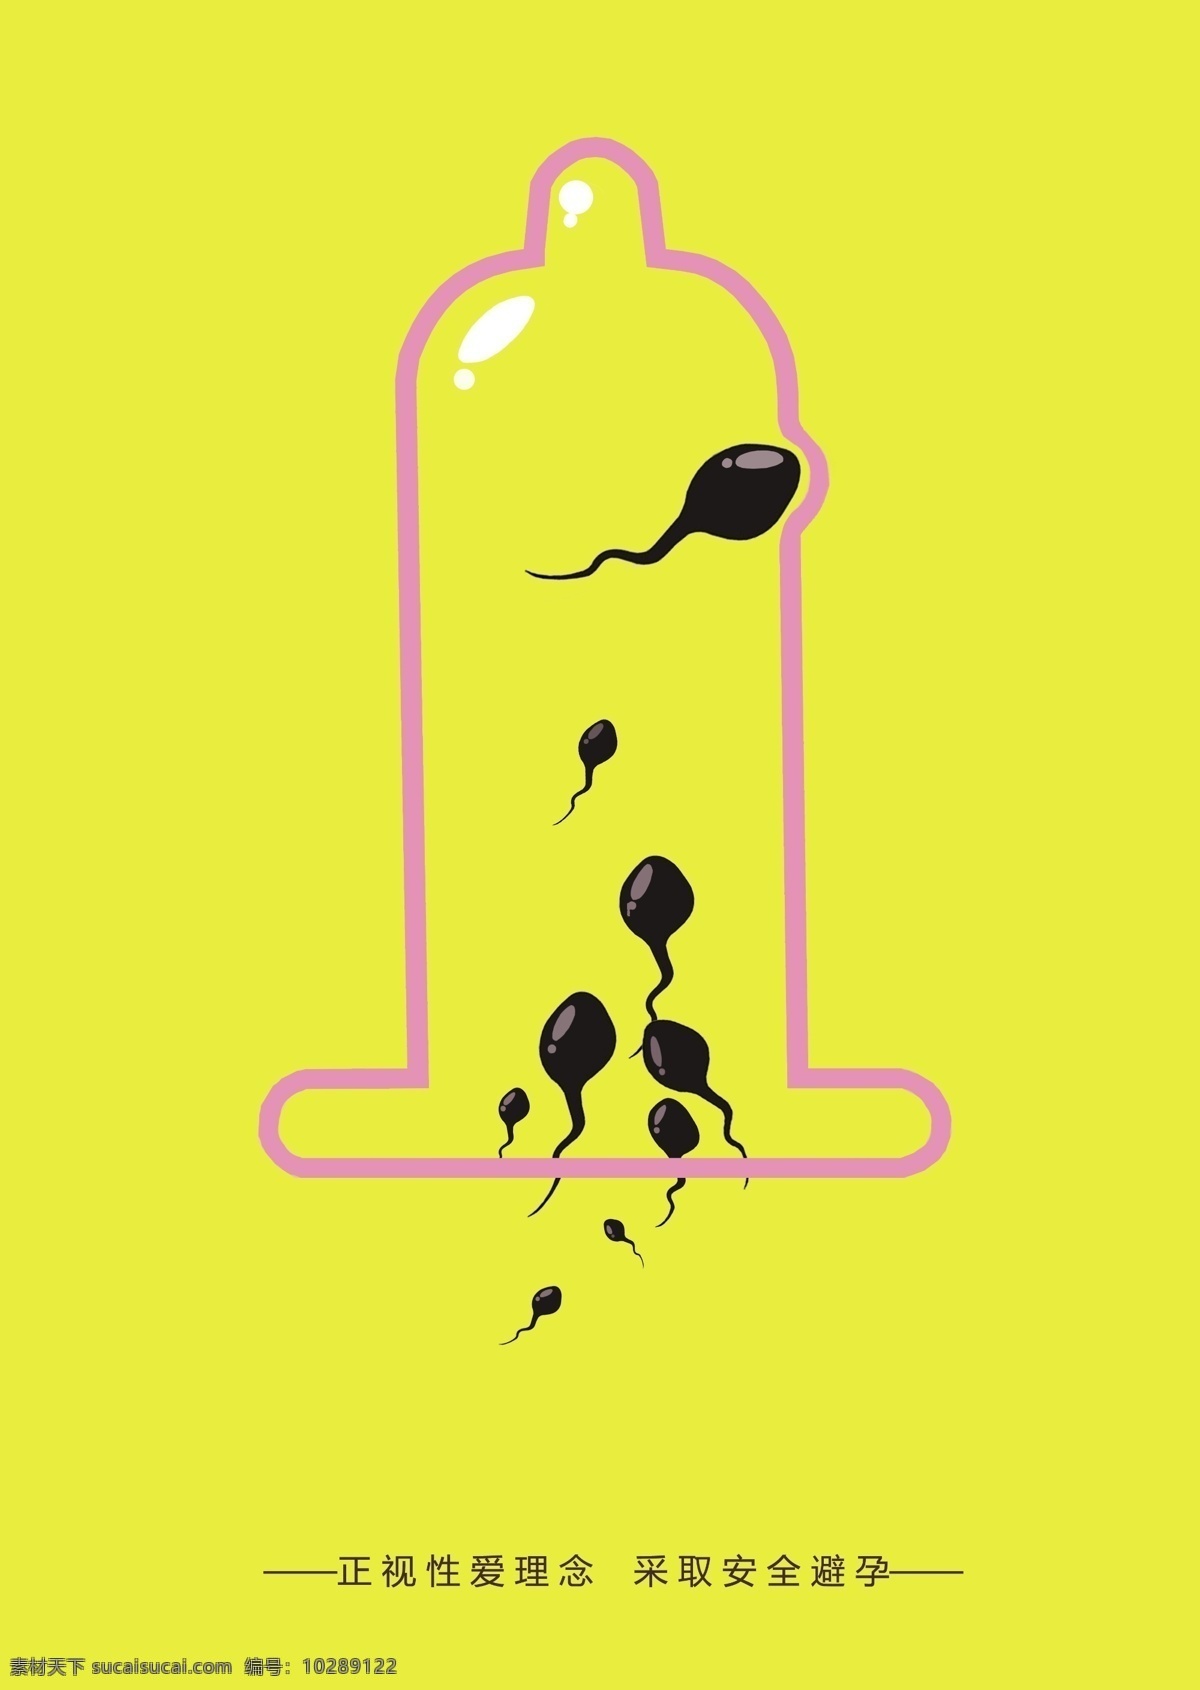 安全 避孕套 黄色 宣传 公益 海报 小 蝌蚪 精子 避孕海报 安全套 公益海报 平面设计